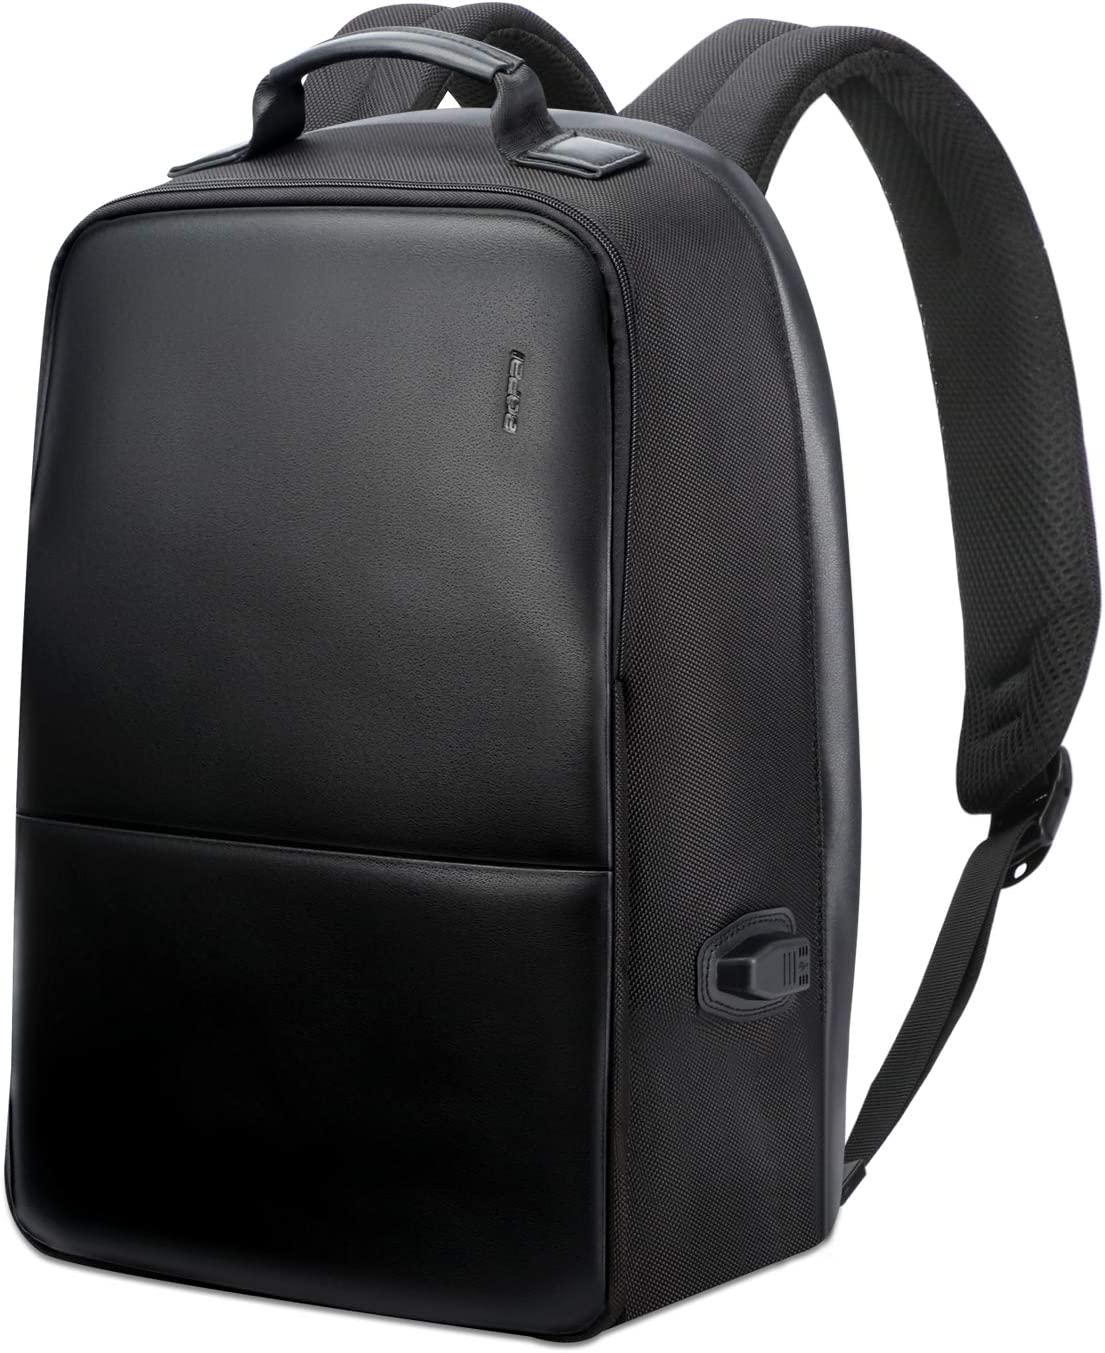 Bopai Backpack